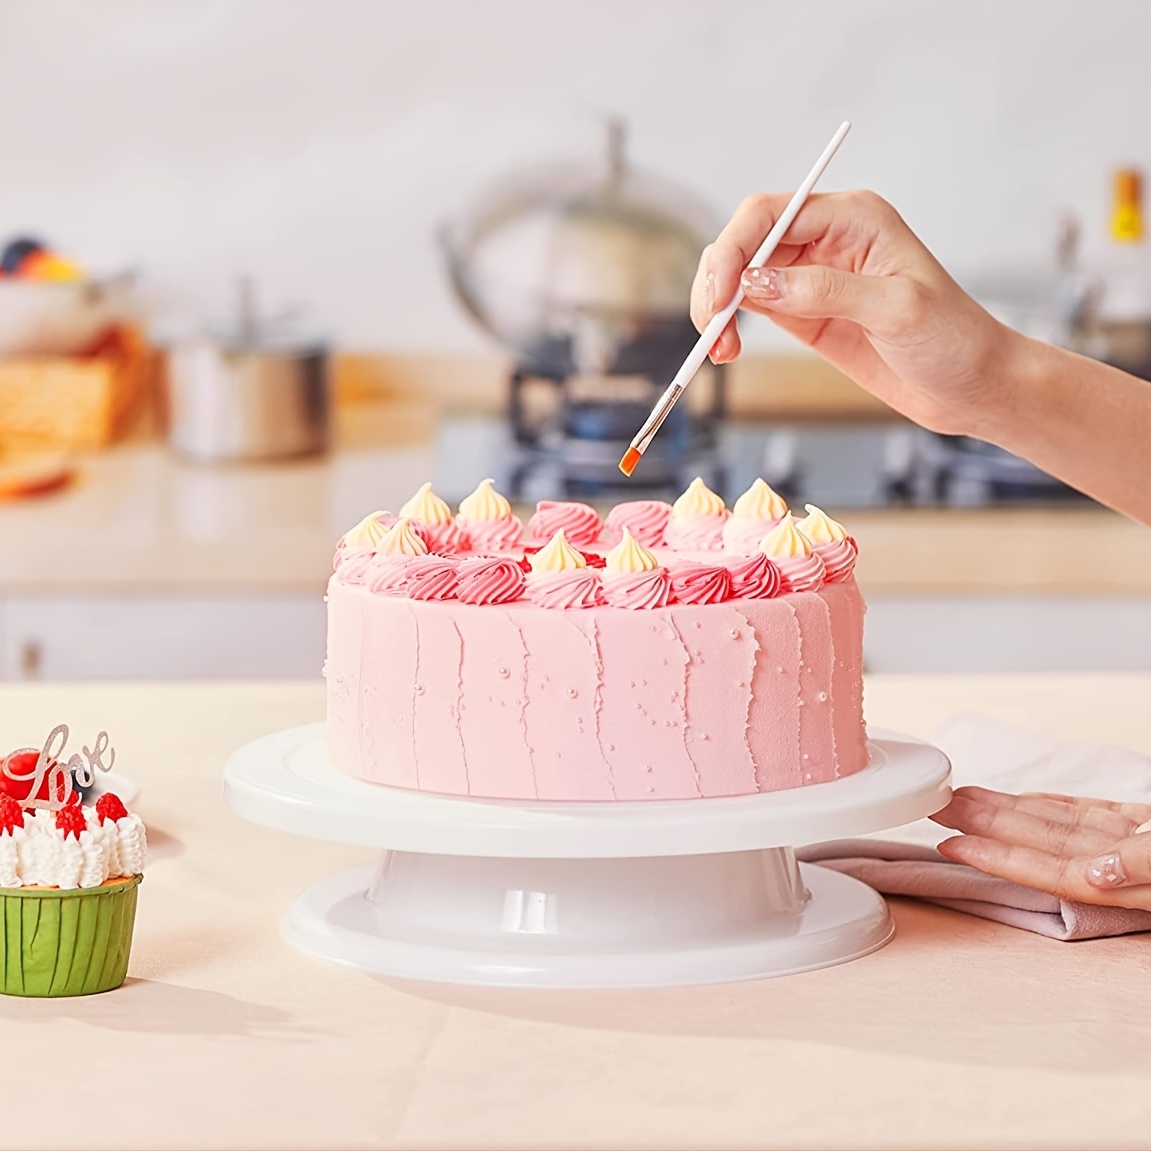 Cake Turntable Cake Decorating Kit Supplies Baking Supplies - Temu